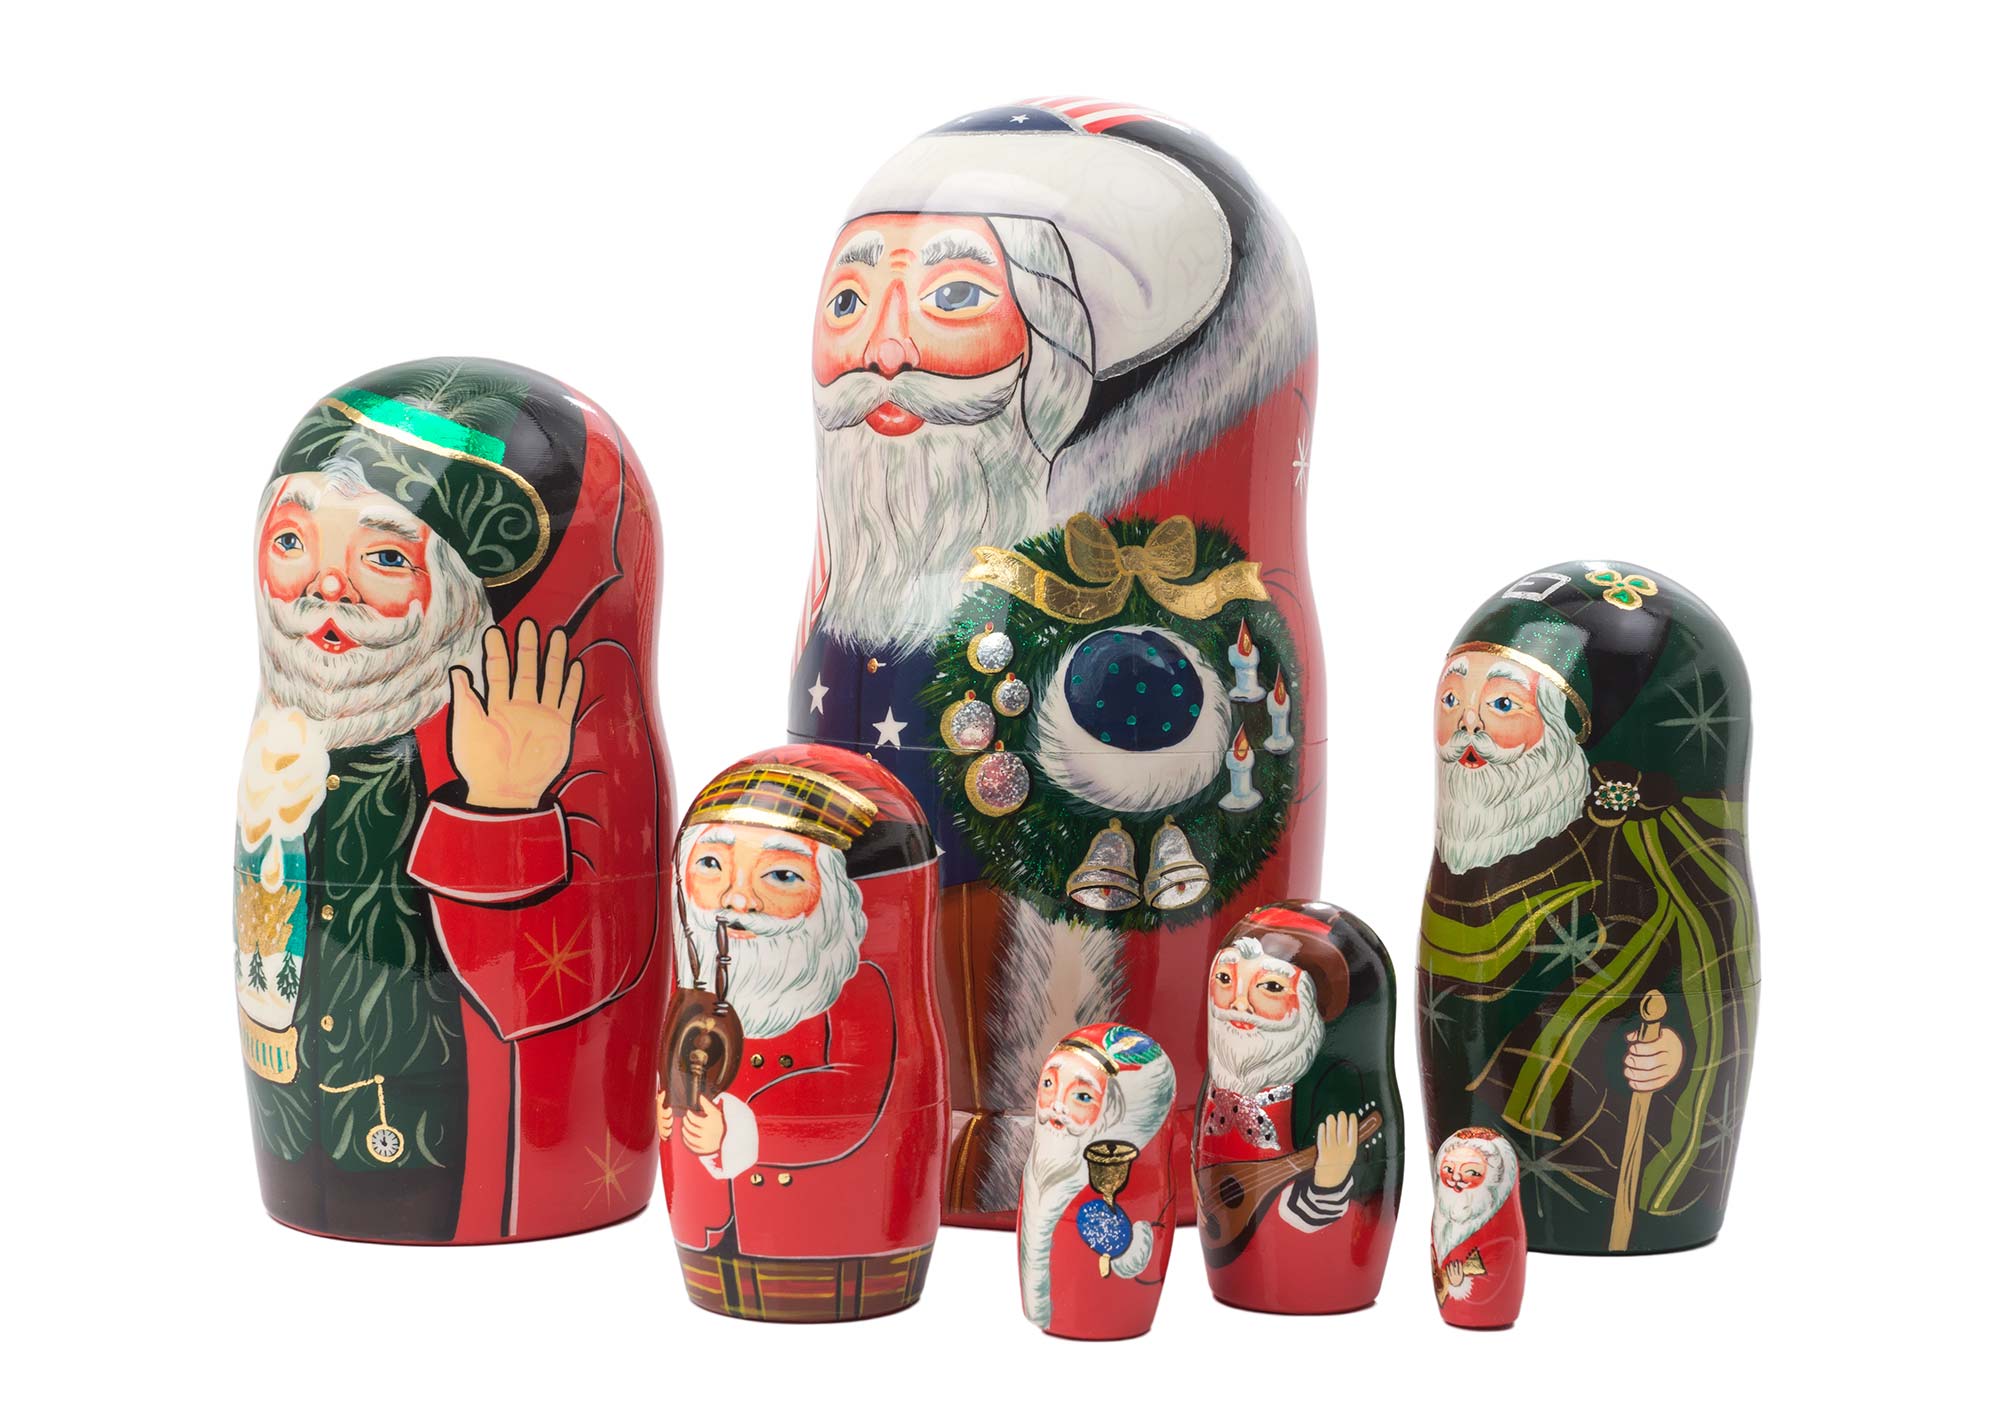 Buy International Santas Nesting Doll 7pc./8" at GoldenCockerel.com